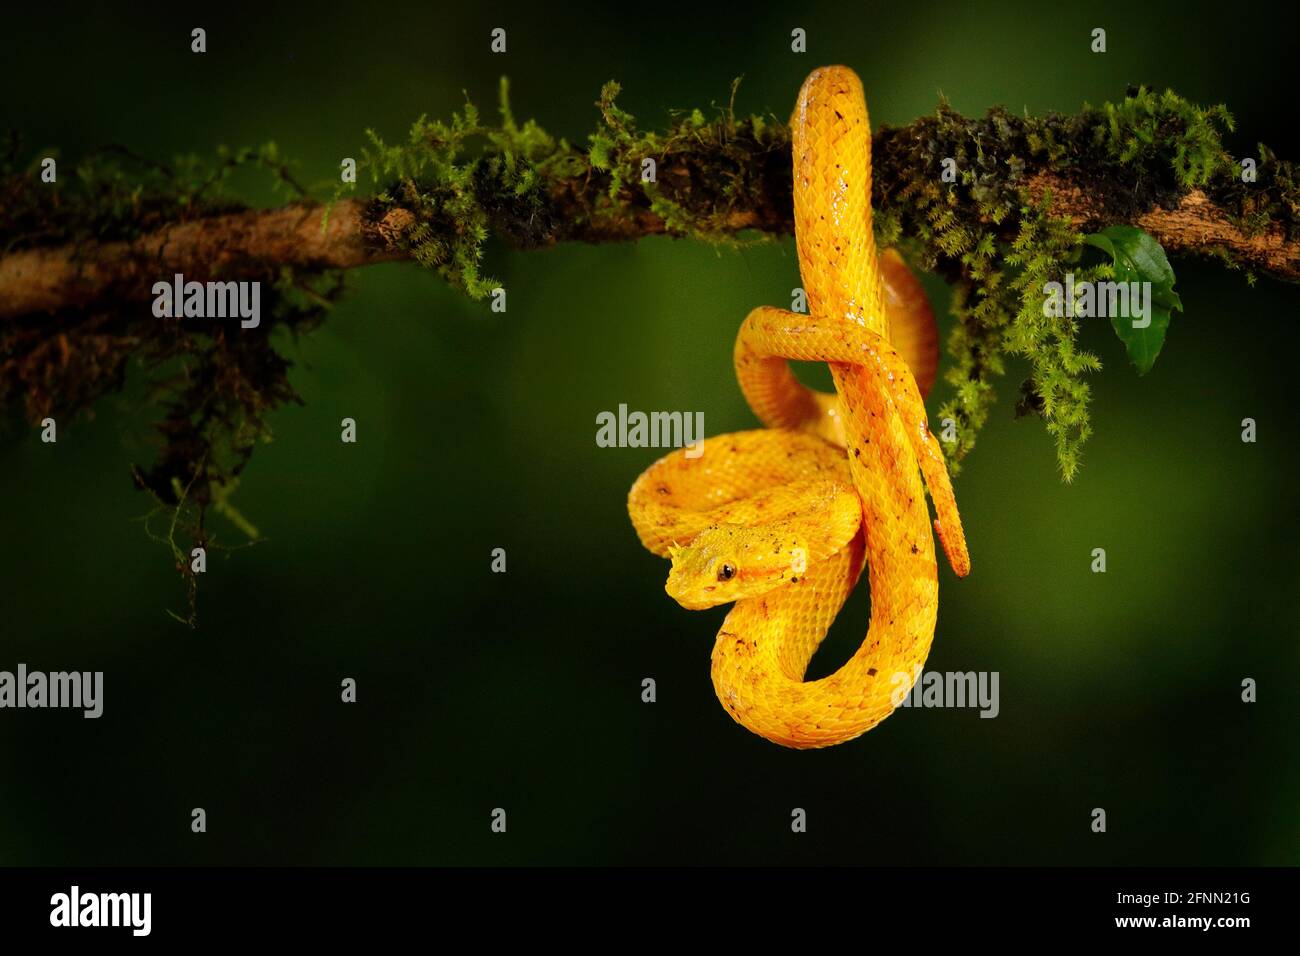 Pericolo di veleno Viper serpente dal Costa Rica. Palma gialla di Eyelash Pitviper, Bothriechis schlegeli, su fiore rosso selvaggio. Scena della fauna selvatica dalla foresta tropicale. Foto Stock